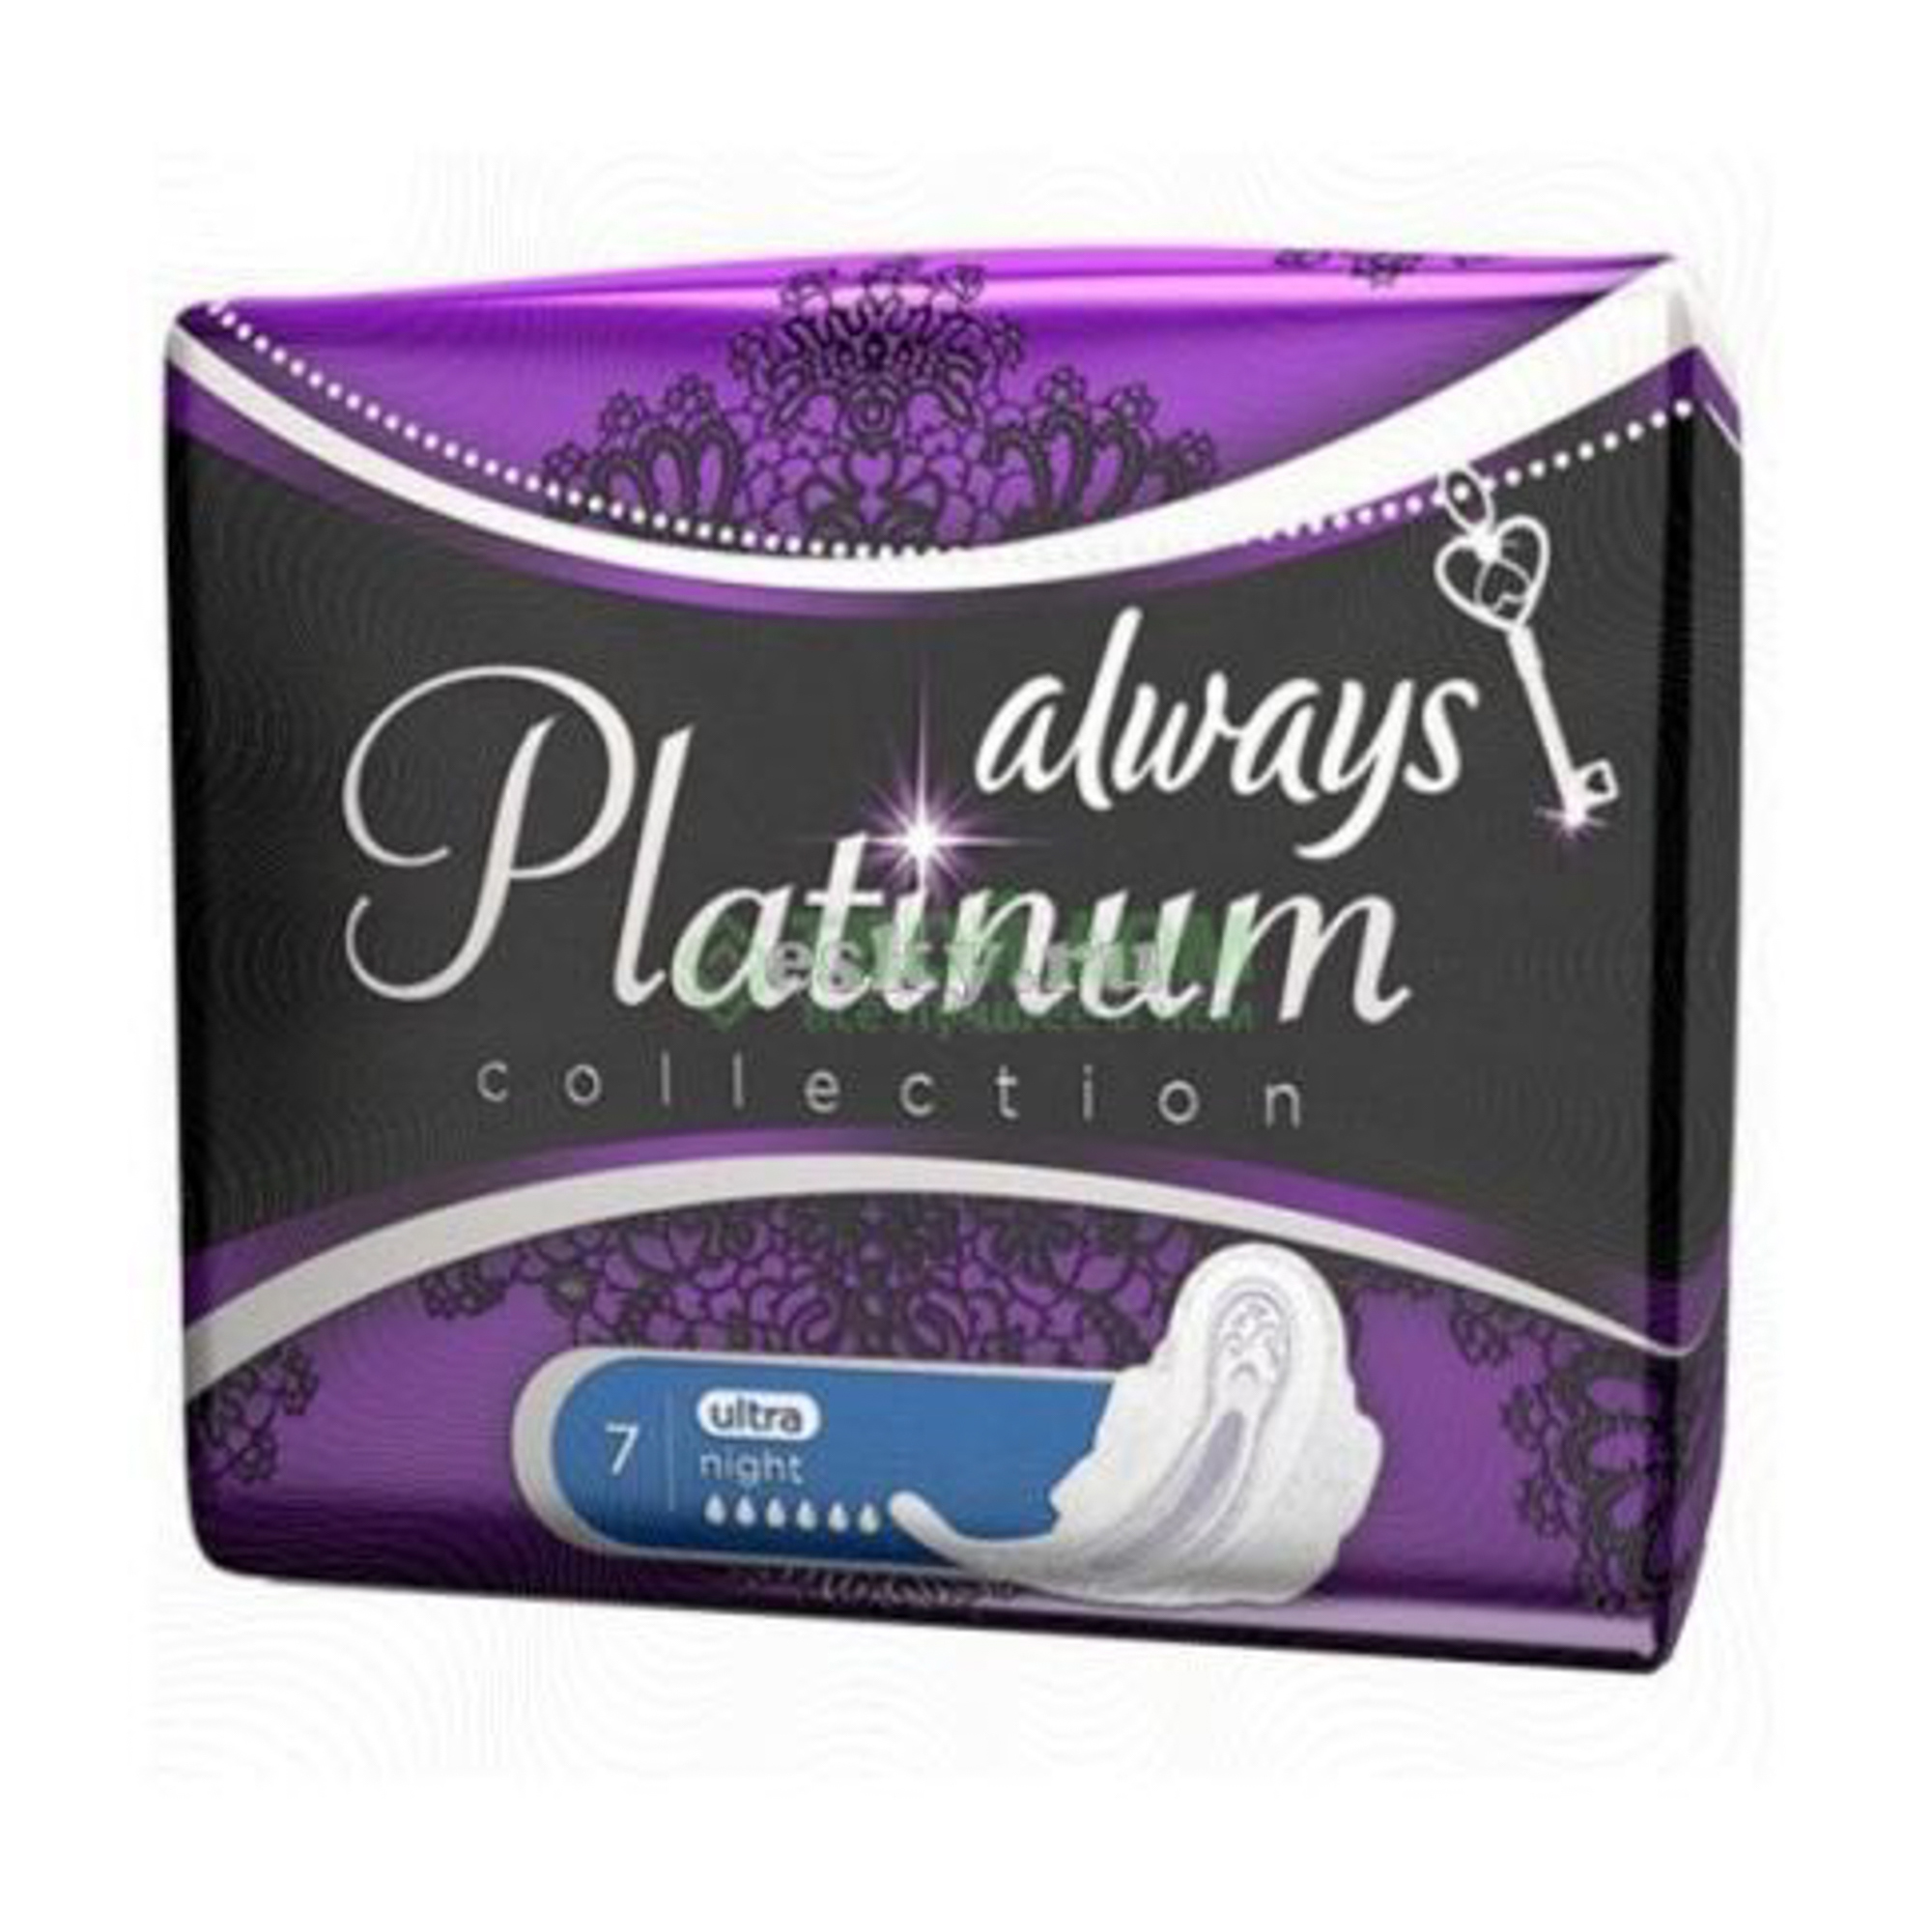 Женские гигиенические прокладки с крылышками Always Platinum Ночные, размер 4, 6шт